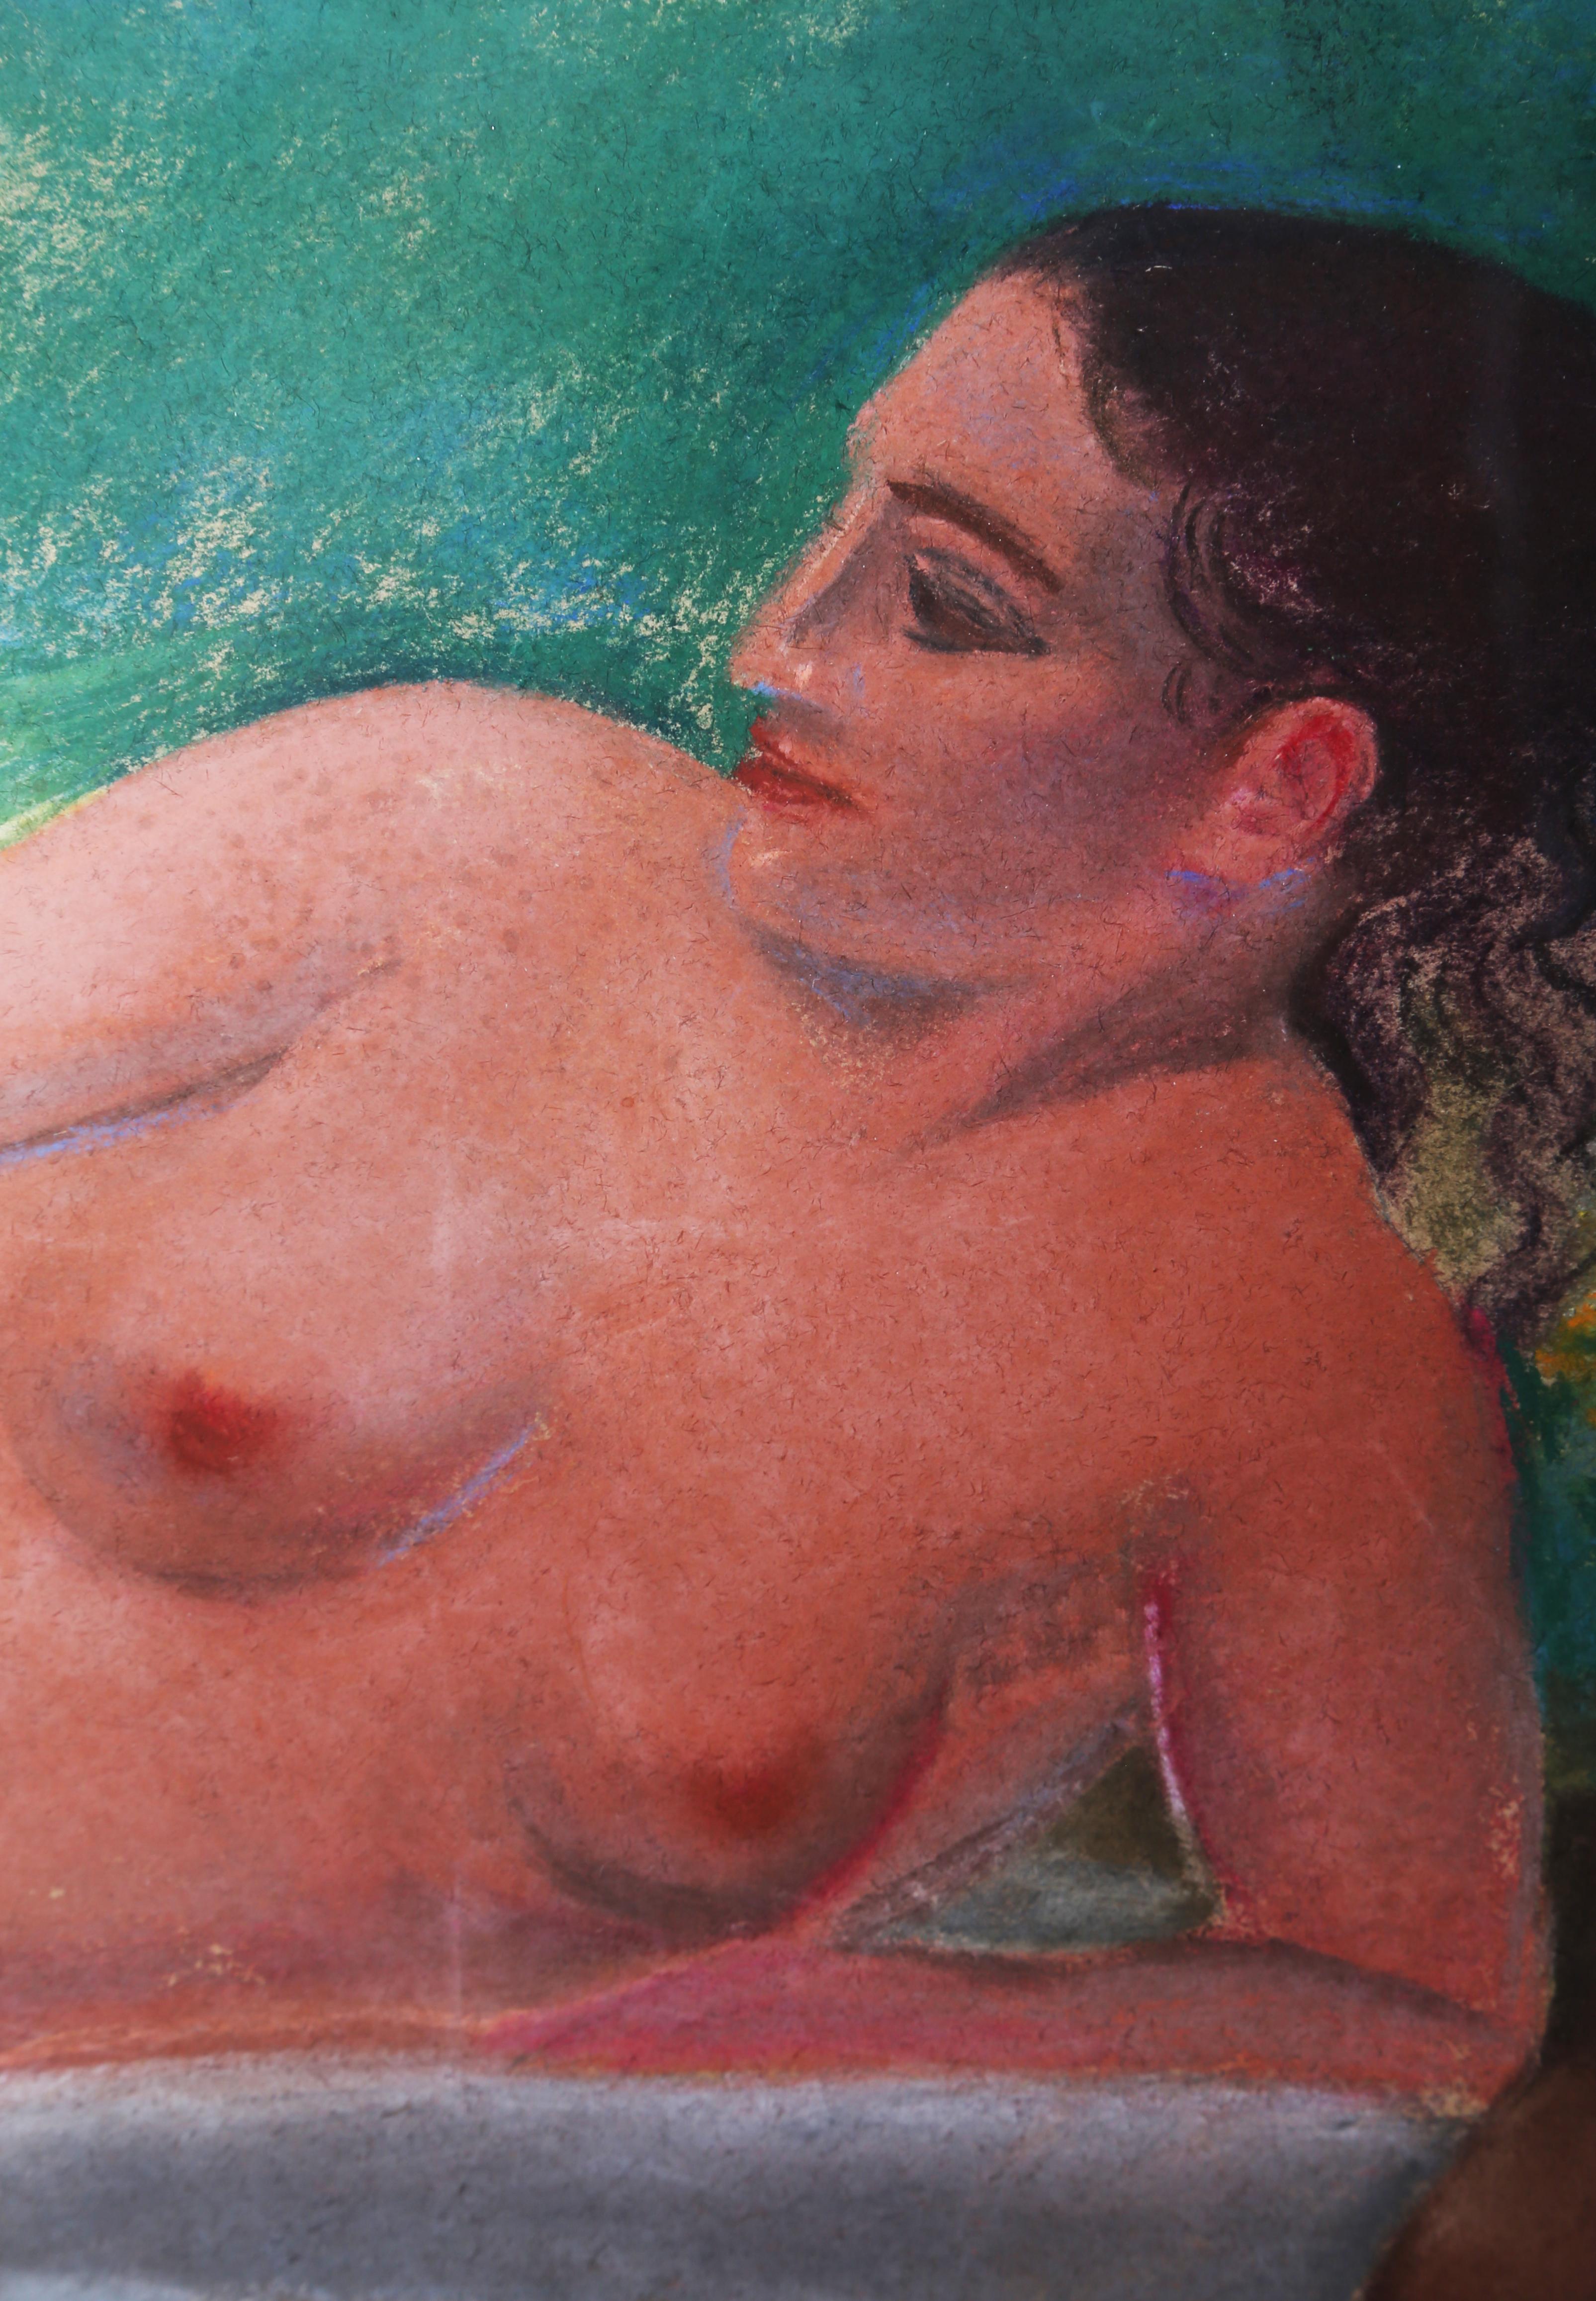 Ce portrait de femme nue allongée en train de pique-niquer fait appel à plusieurs références à l'histoire de l'art. Les couleurs vives, presque néon, rappellent les peintures tropicales réalisées par Gauguin à la fin du XIXe siècle. Le décor